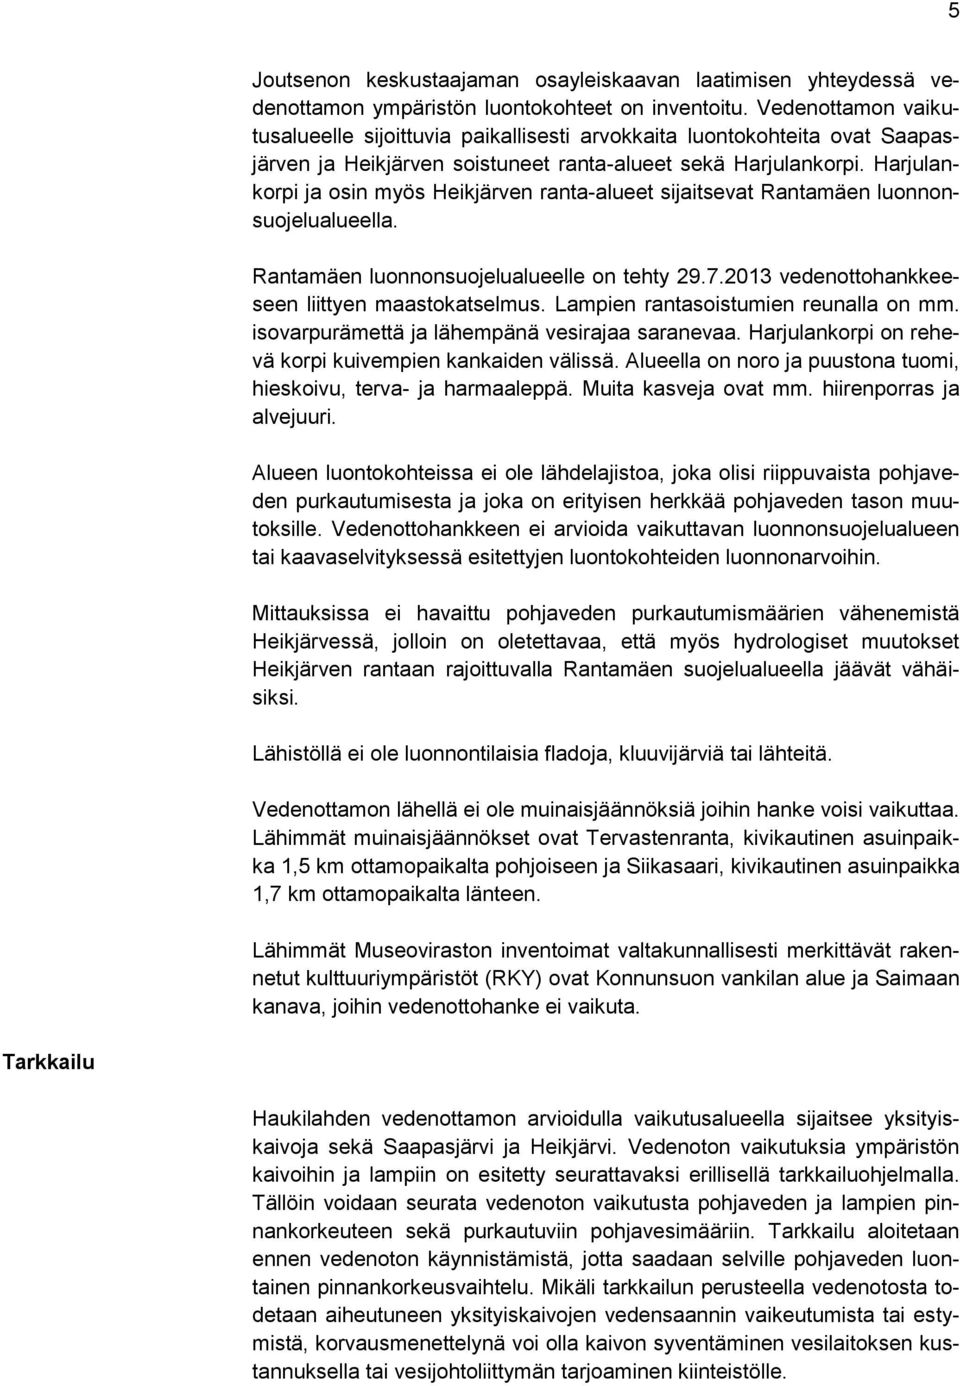 Harjulankorpi ja osin myös Heikjärven ranta-alueet sijaitsevat Rantamäen luonnonsuojelualueella. Rantamäen luonnonsuojelualueelle on tehty 29.7.2013 vedenottohankkeeseen liittyen maastokatselmus.